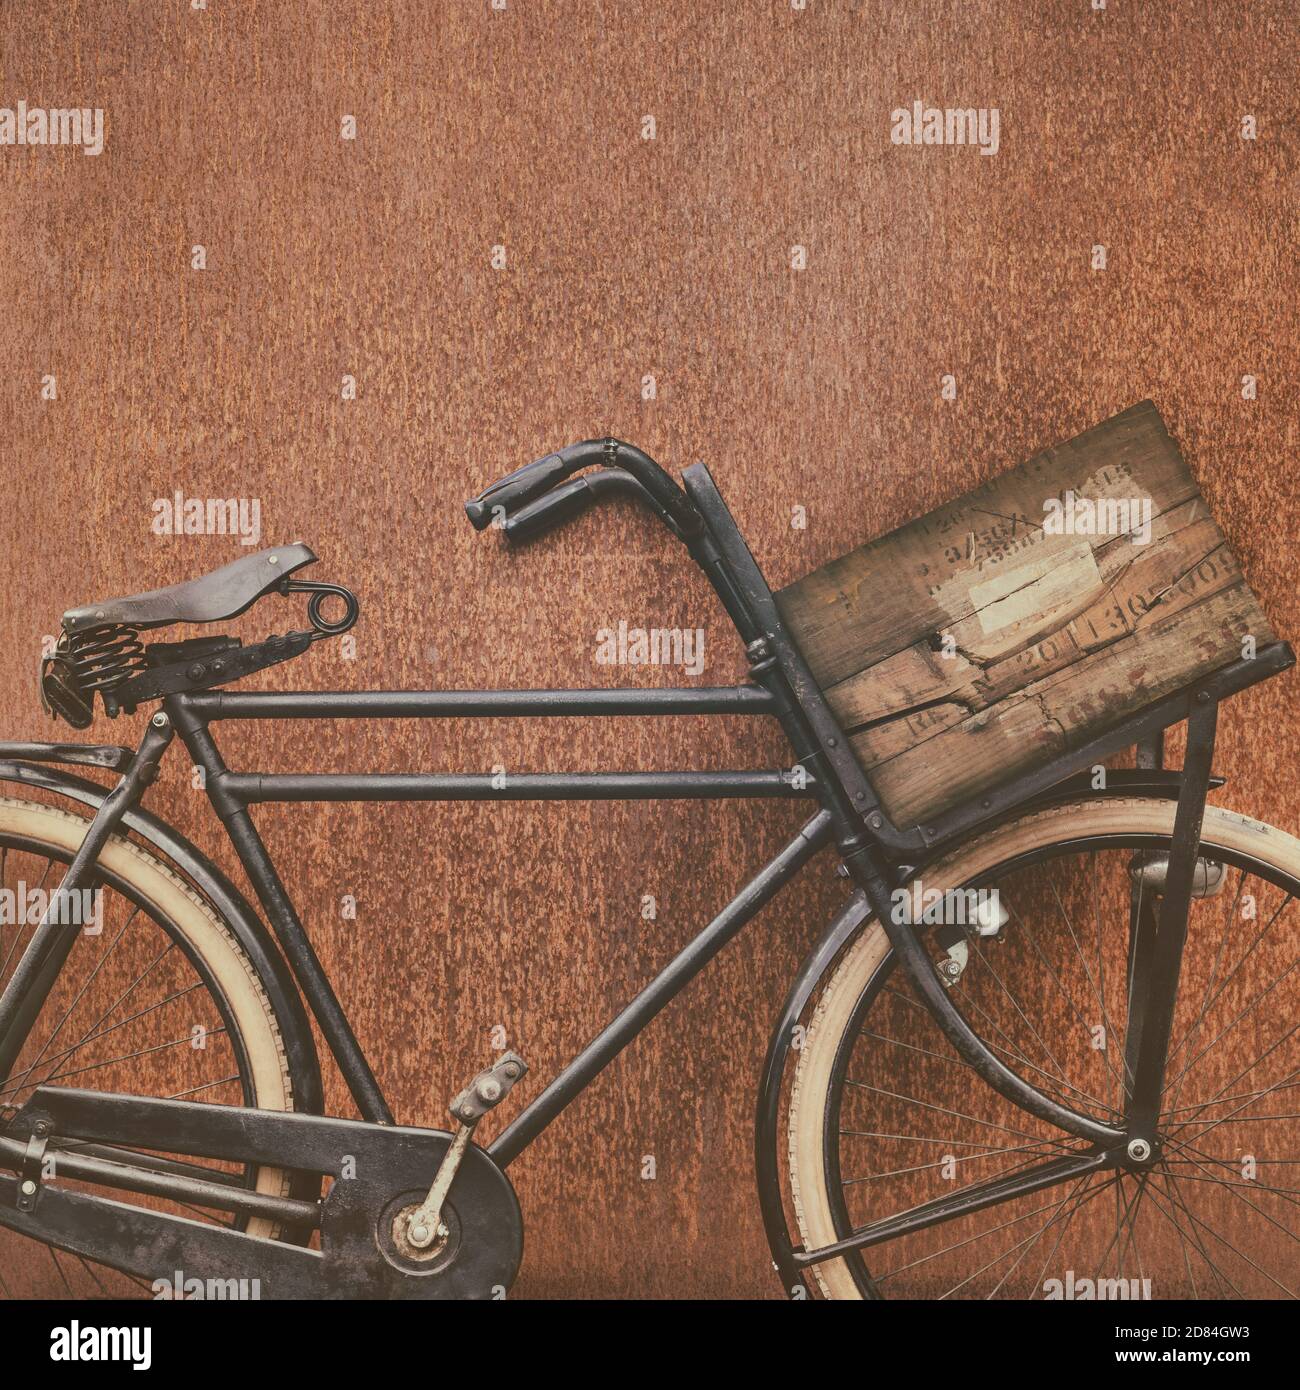 Immagine in stile retrò di una bicicletta da carico nera con vecchia cassa di trasporto in legno e sella in pelle davanti a parete in acciaio al corten Foto Stock